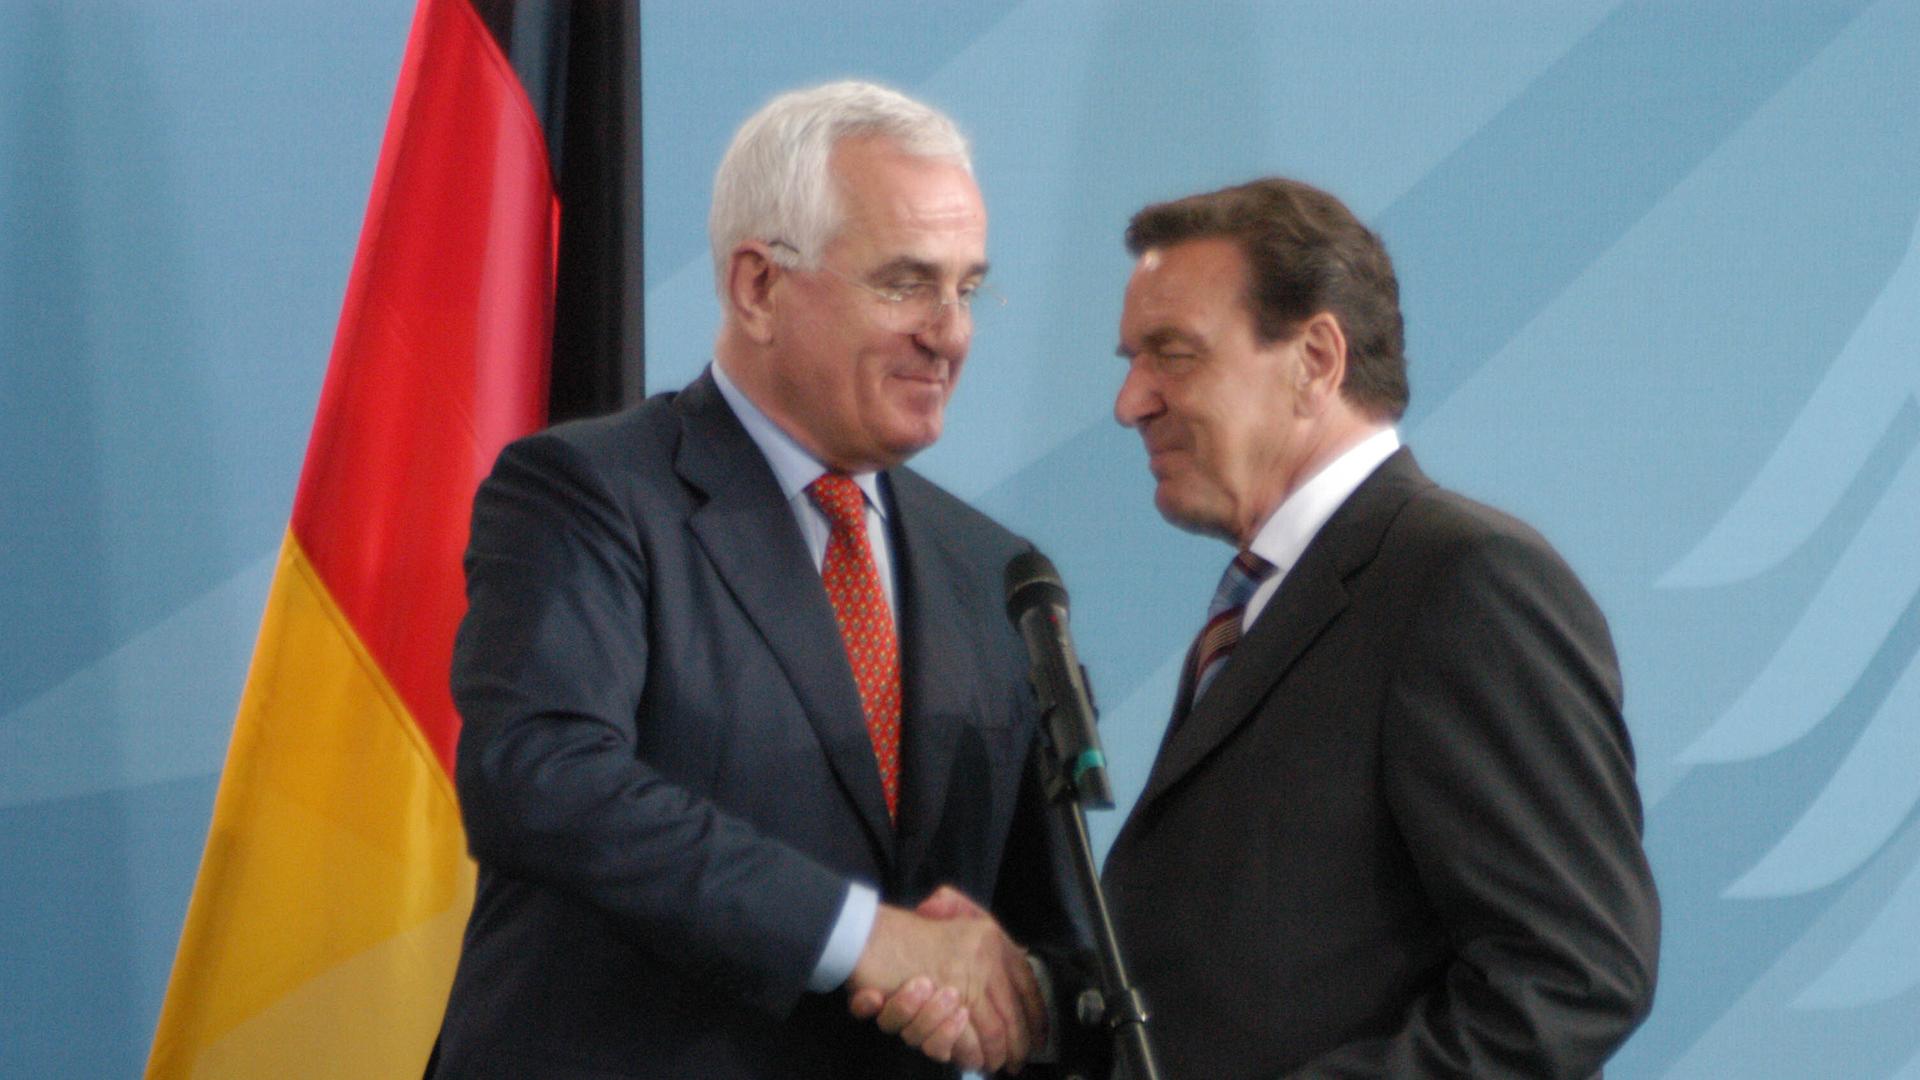 Peter Hartz (links im Bild) am 16. August 2002 in Berlin bei der Übergabe einer CD mit dem Bericht,, der nach ihm benannten Kommission an den damaligen Bundeskanzler Gerhard Schröder